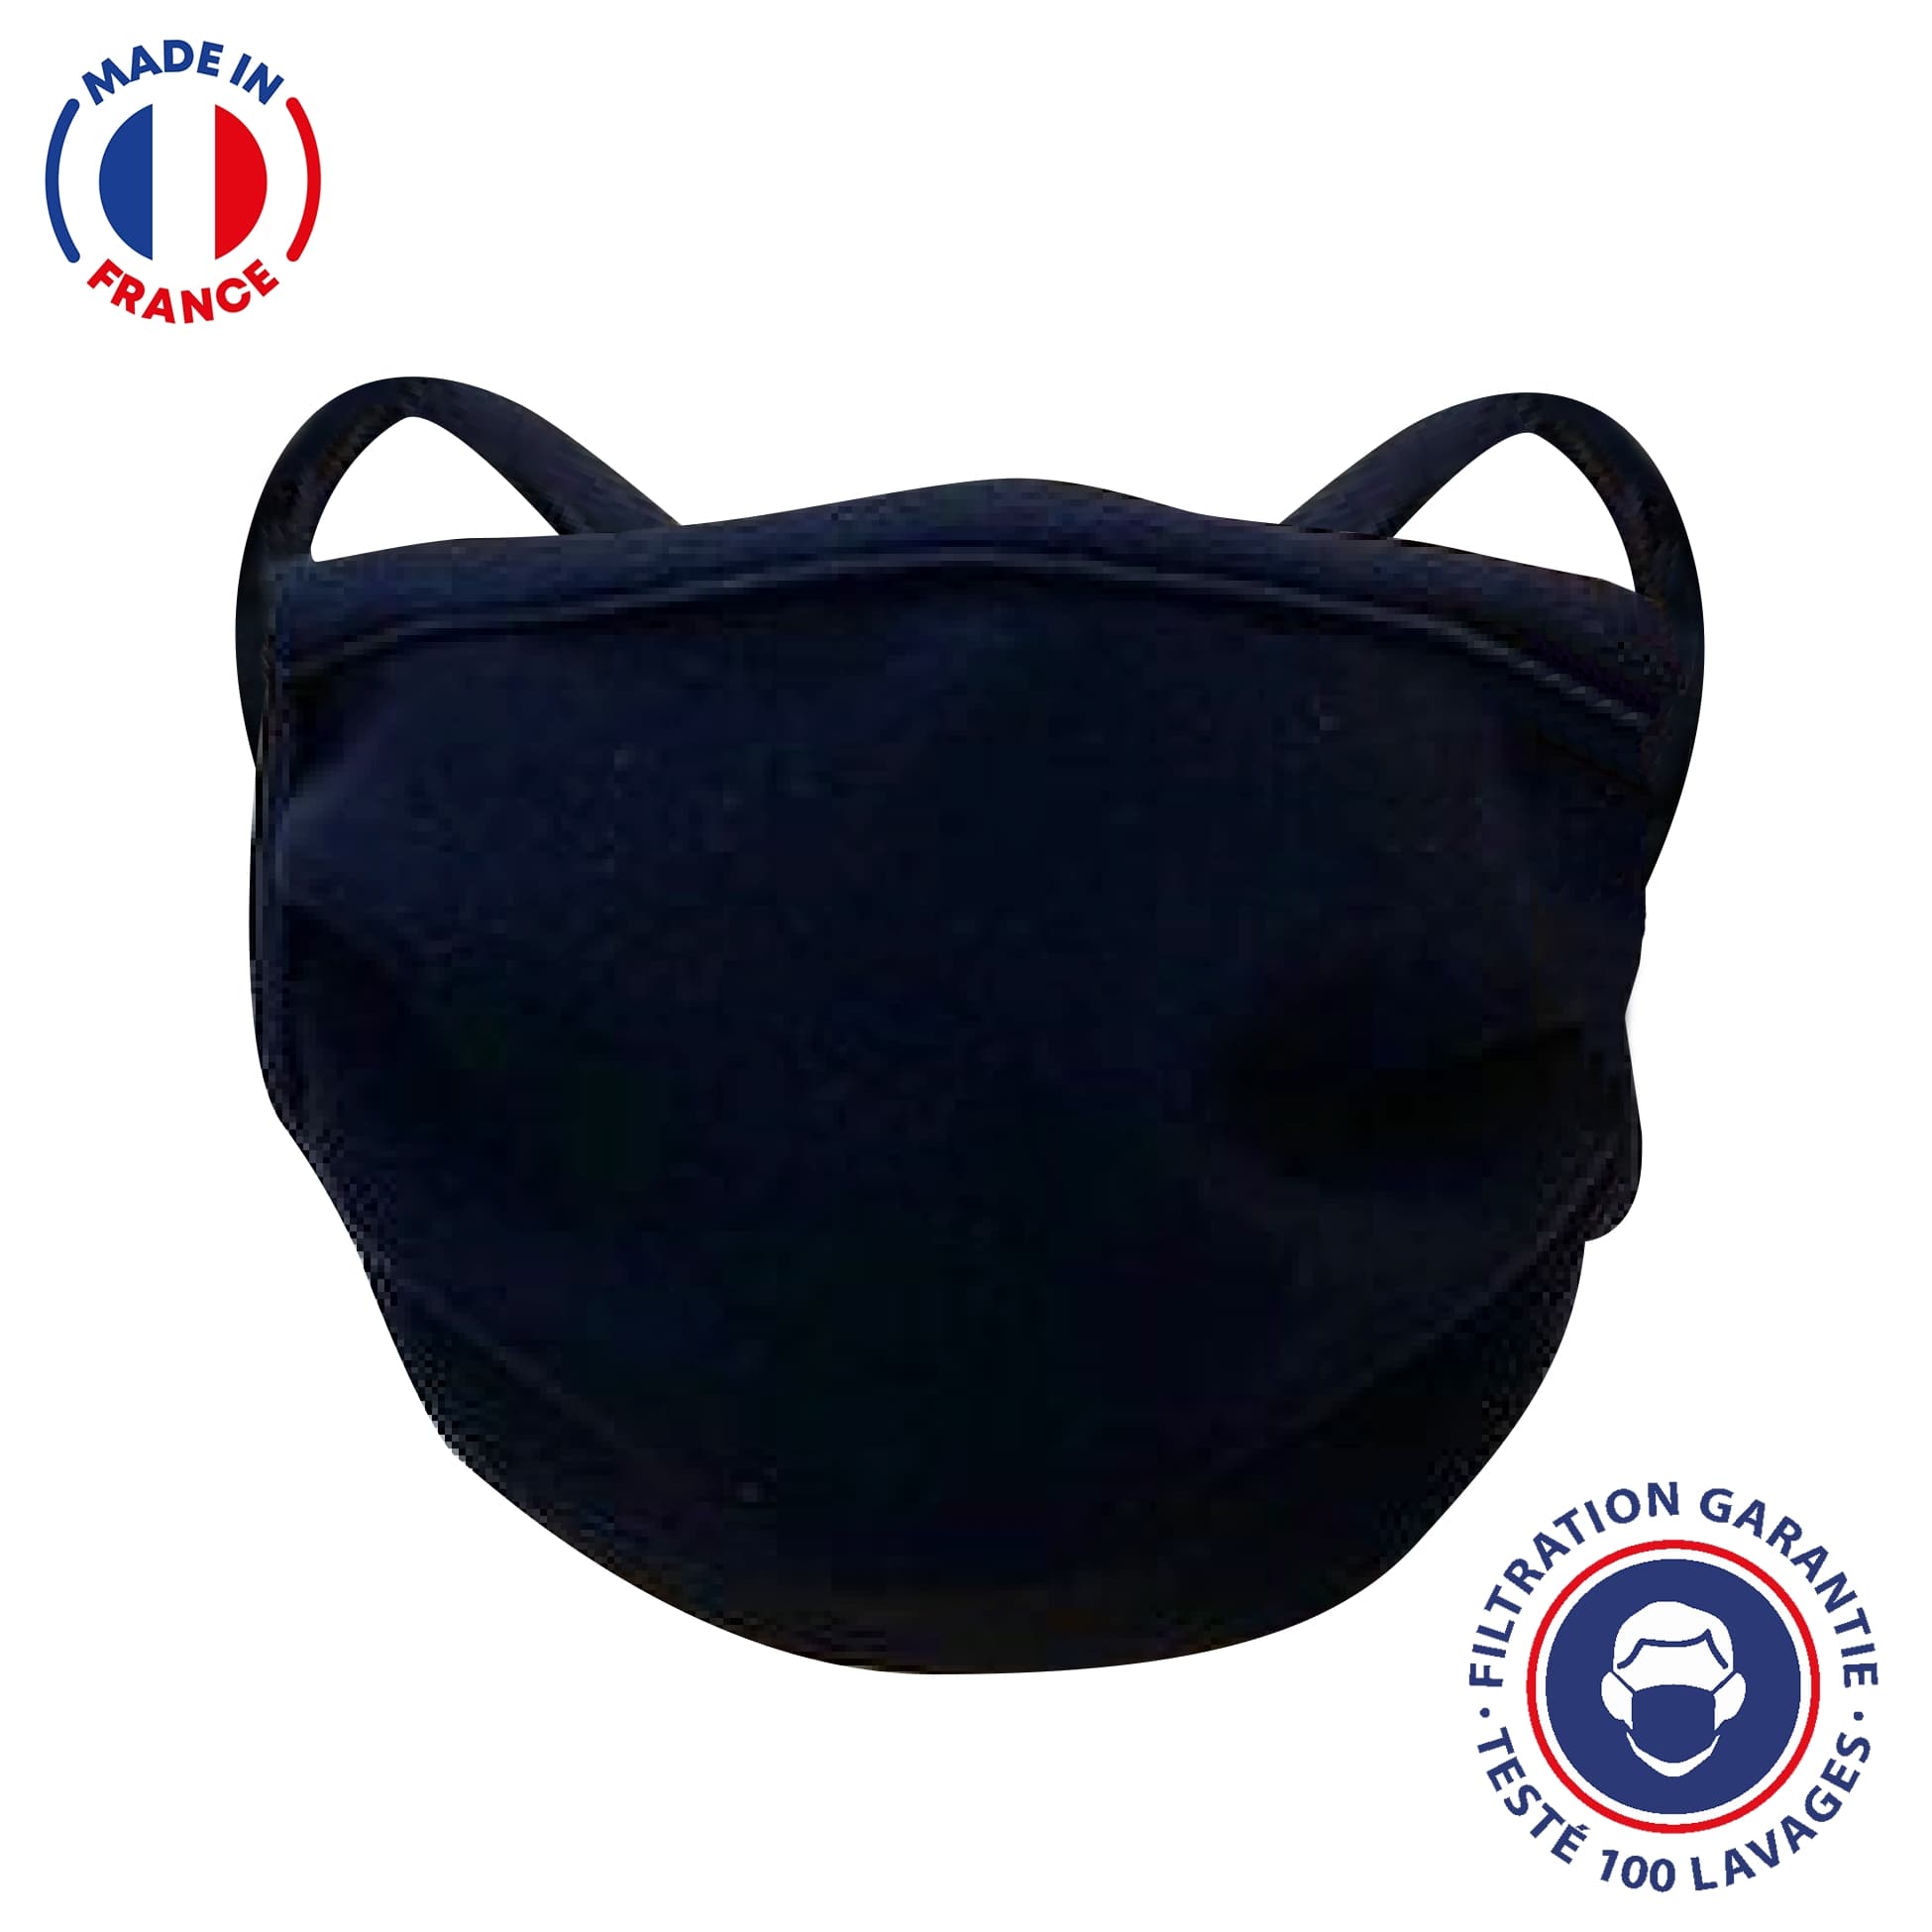 UNS1 100 lavages - Masque bleu marine fabriqué en France